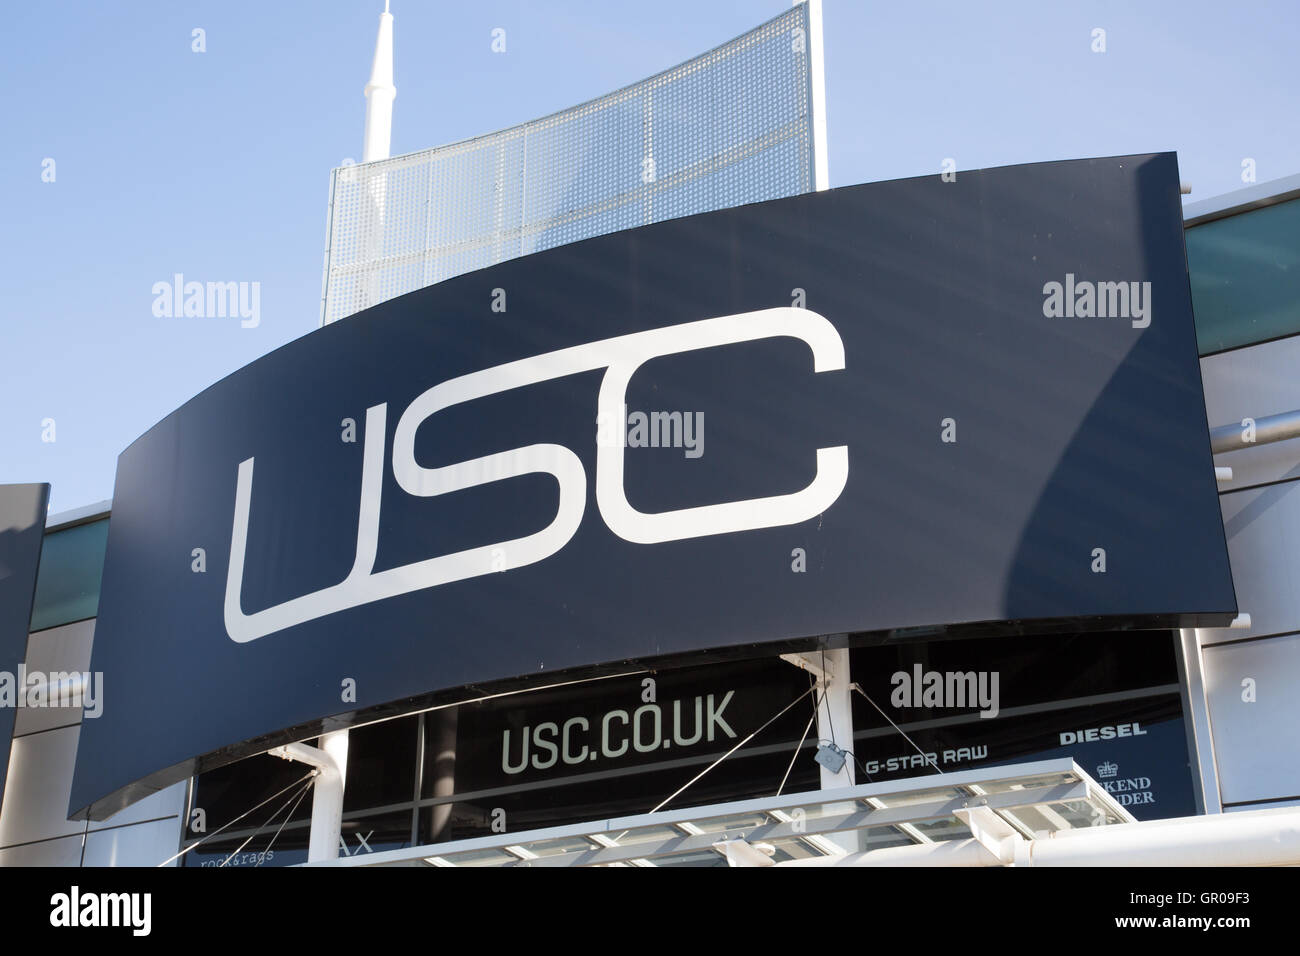 USC signage Stock Photo